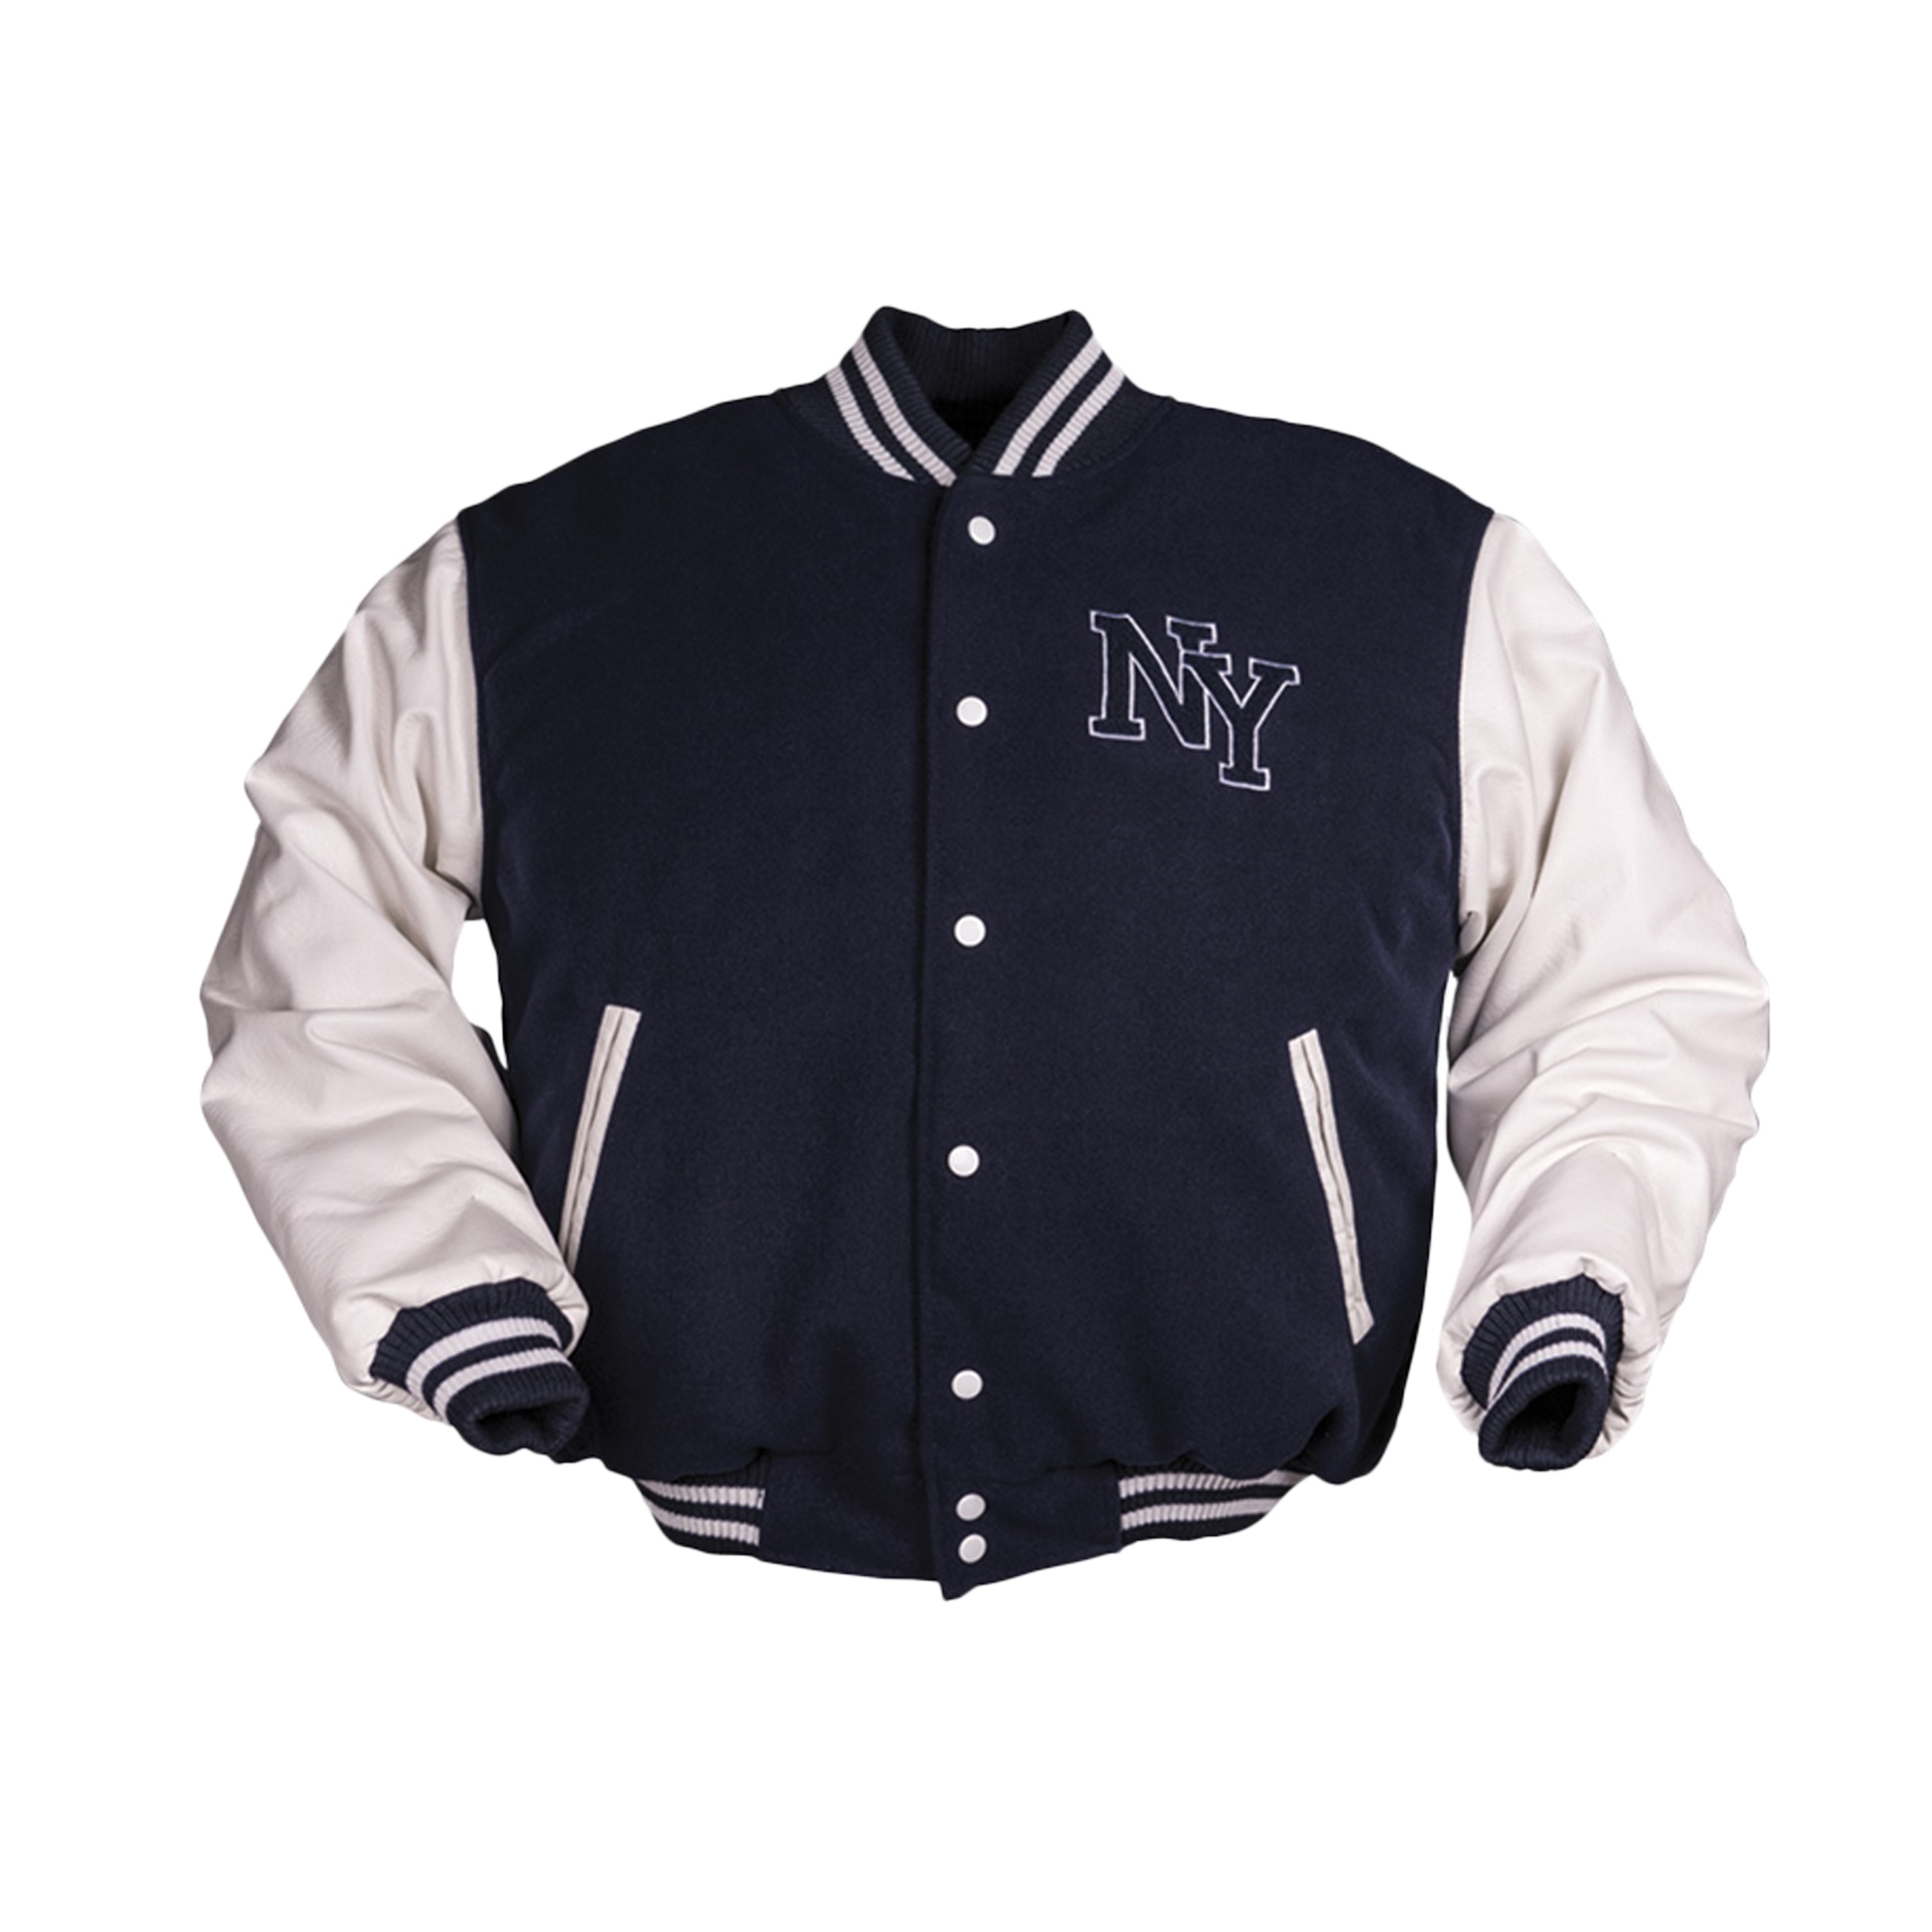 NY Baseball Jacket navy blue/white | NY Baseball Jacket navy blue/white ...